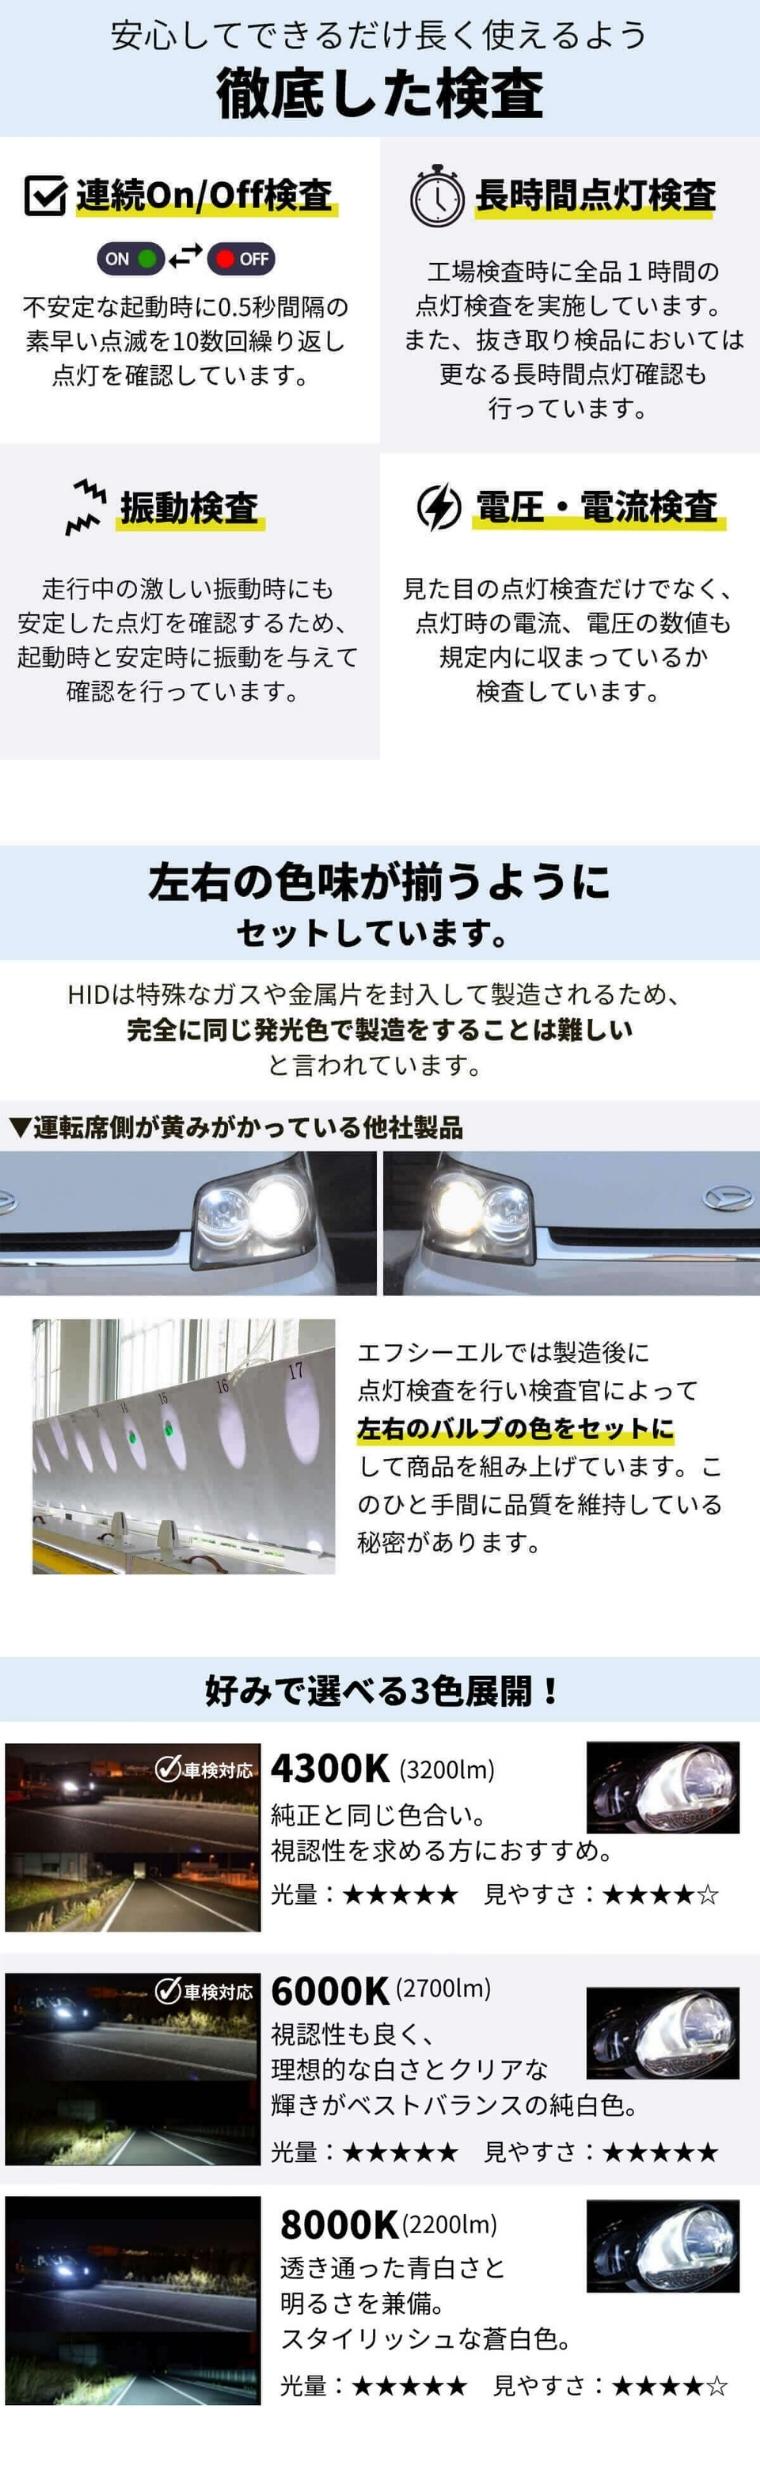 D4R 純正HID交換用バルブ ヘッドライト 車検対応【公式通販】fcl. 車の